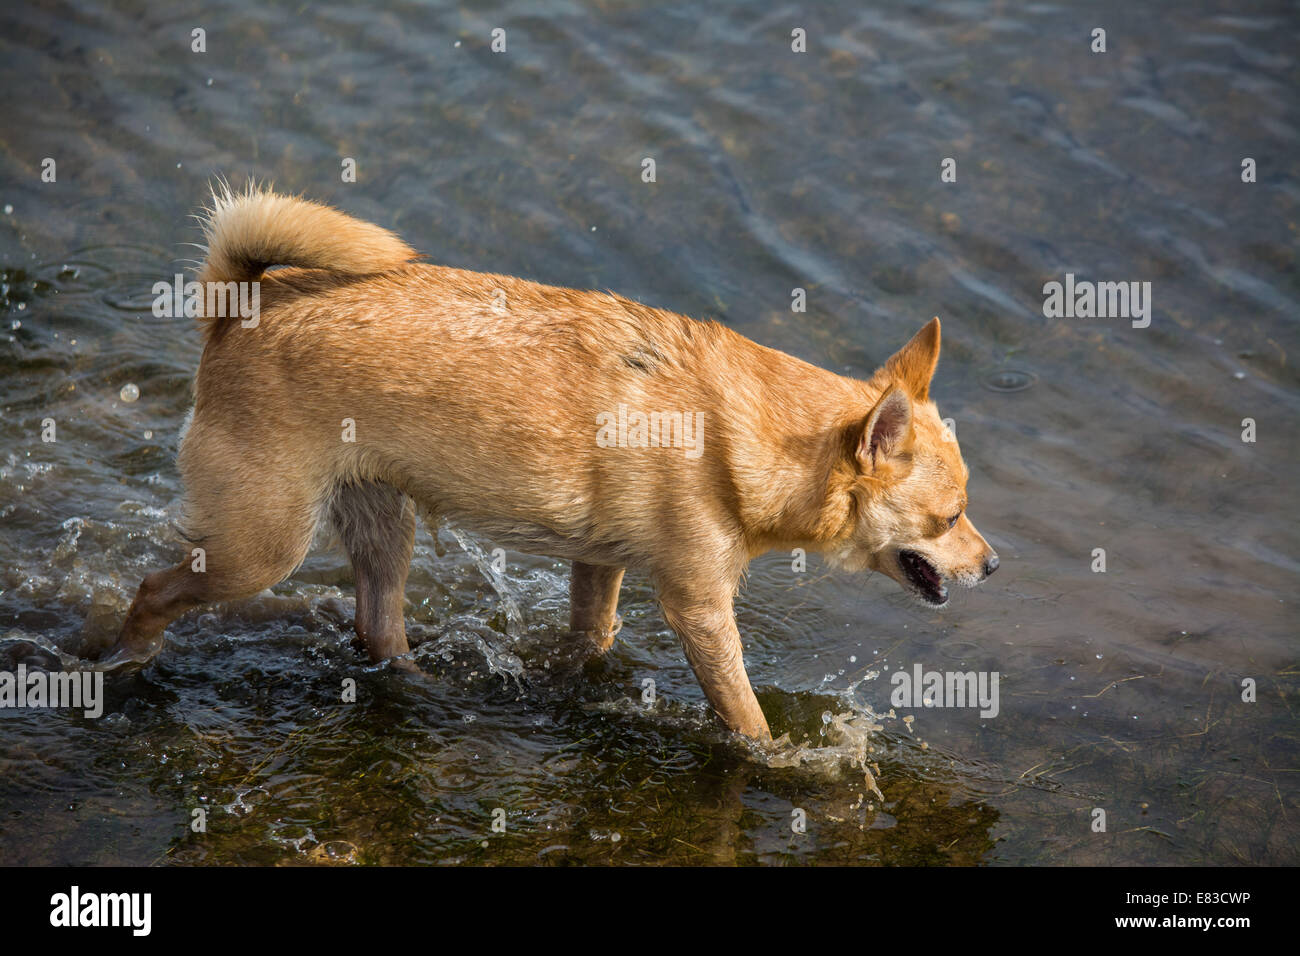 Terrier in water Stock Photo